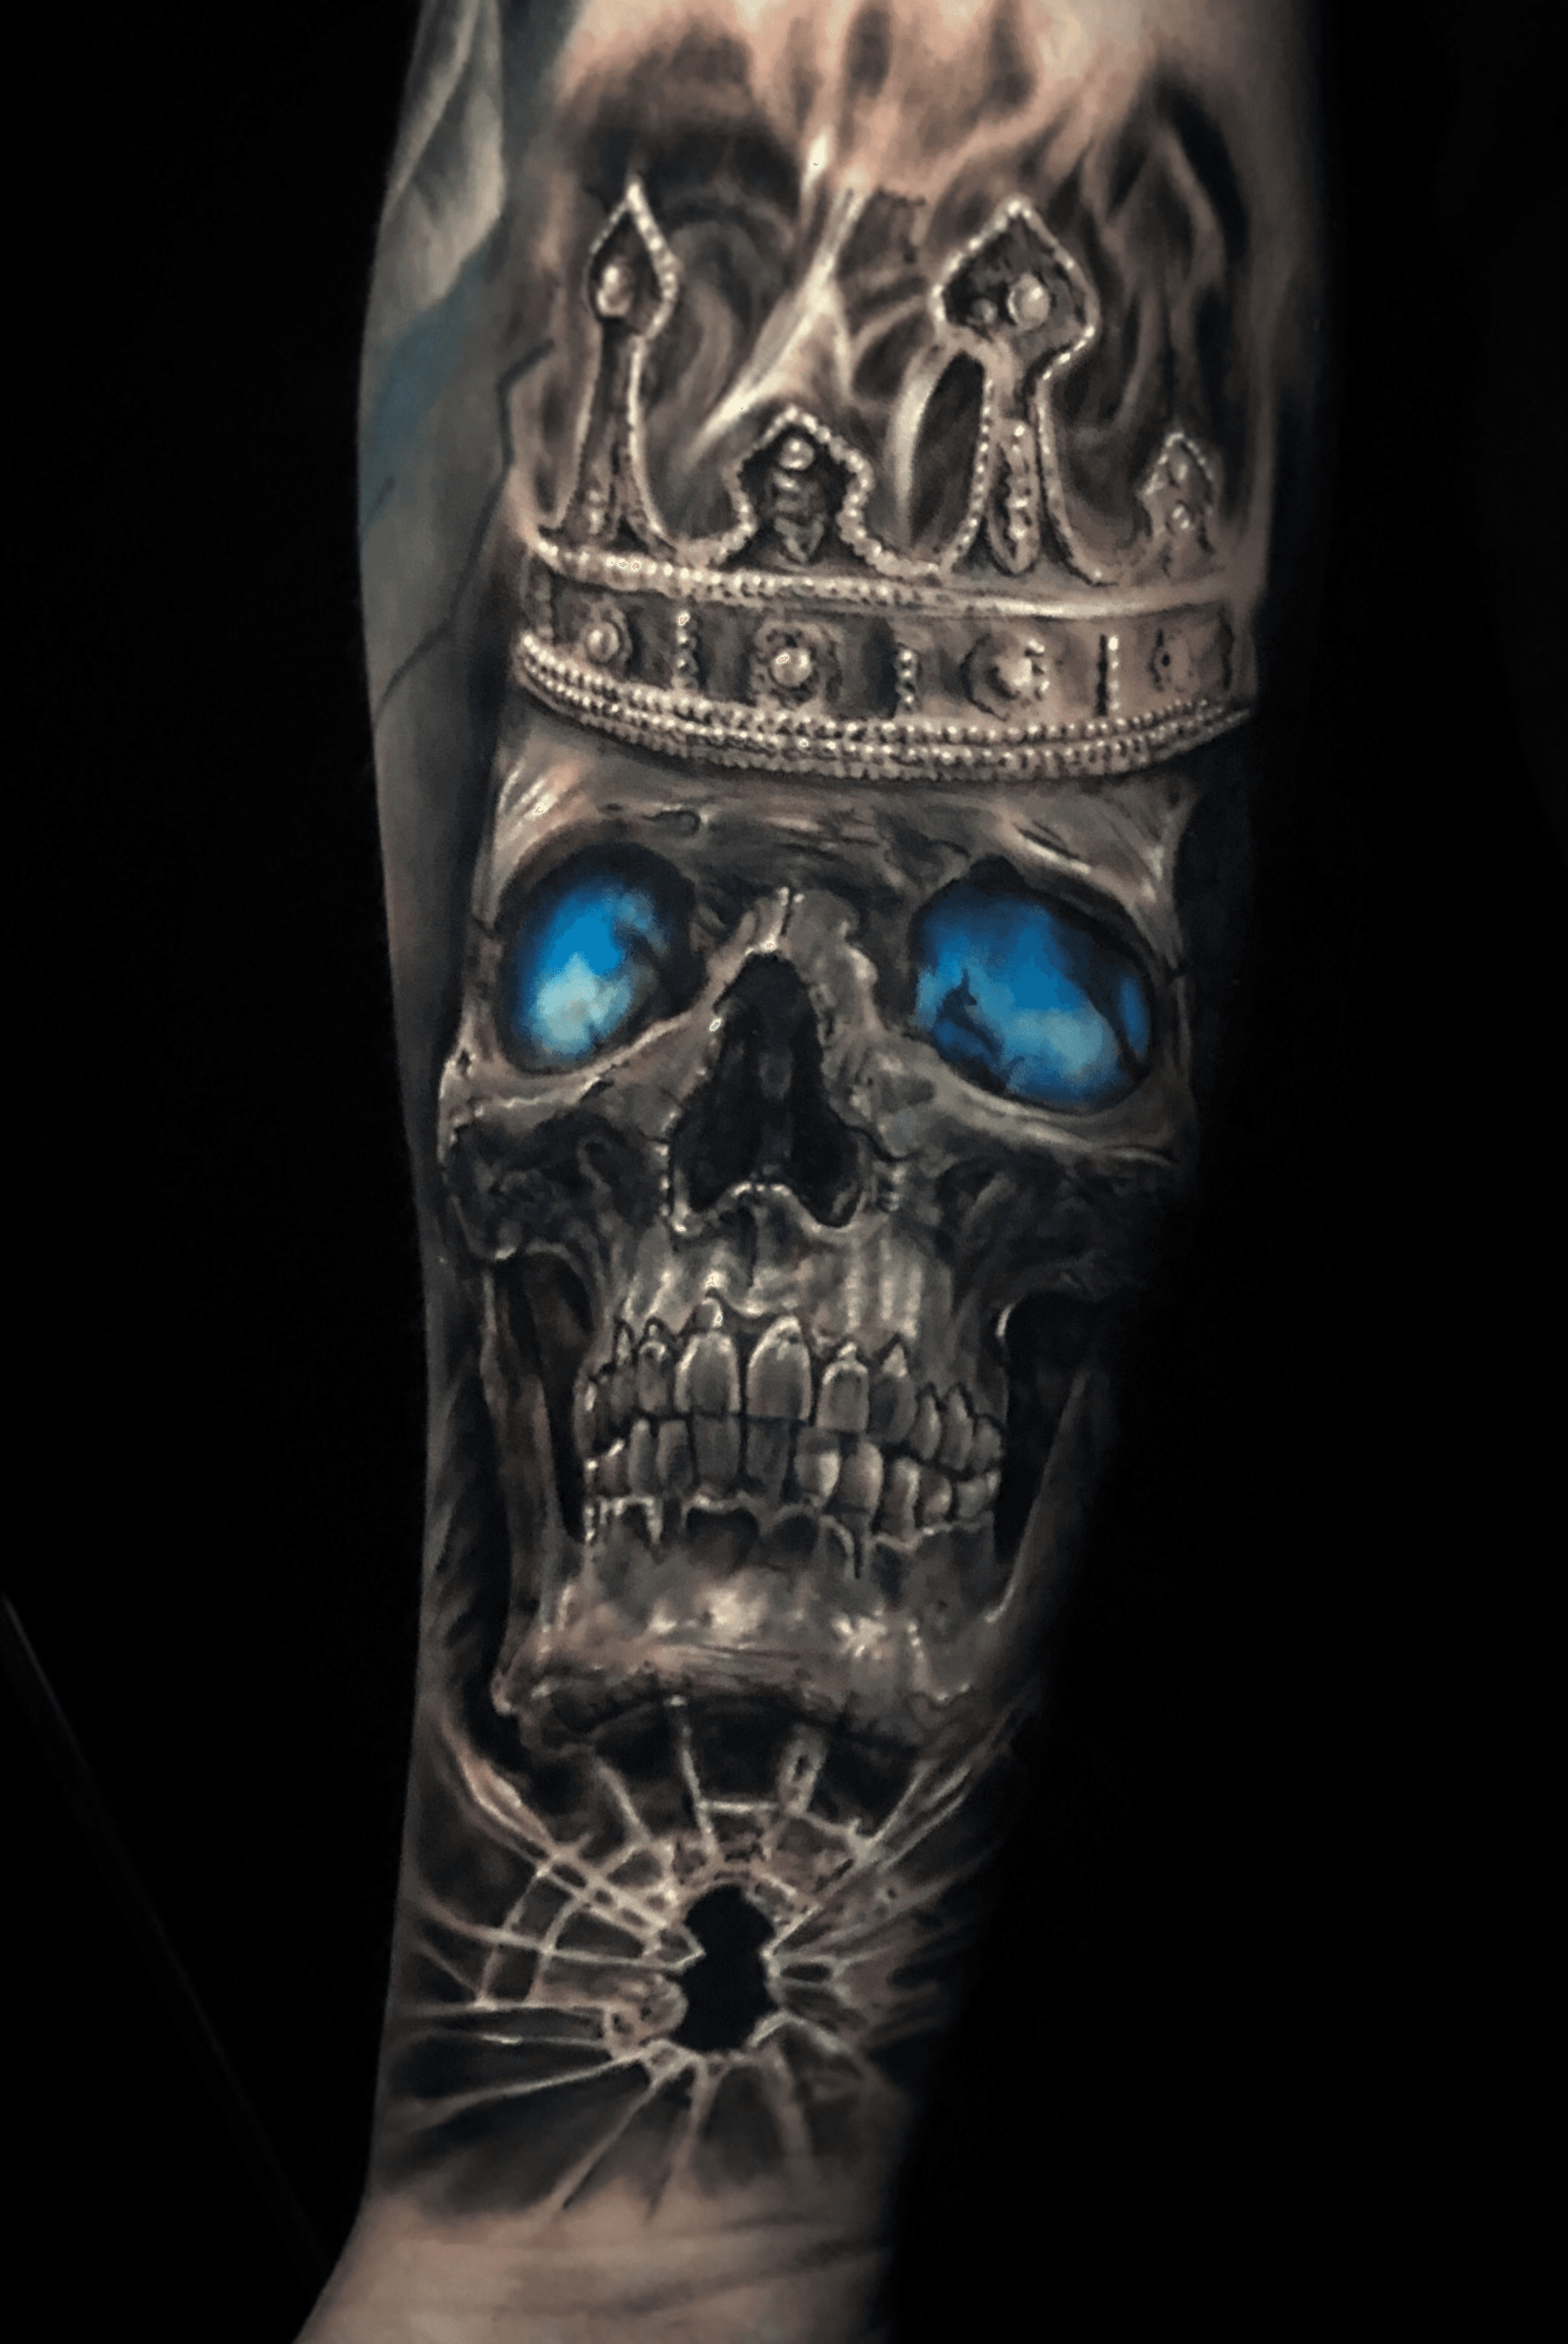 Tattoo uploaded by Tye Tremblay • Skull King #skullking #torontotattoo  #torontotattoos #skull • Tattoodo